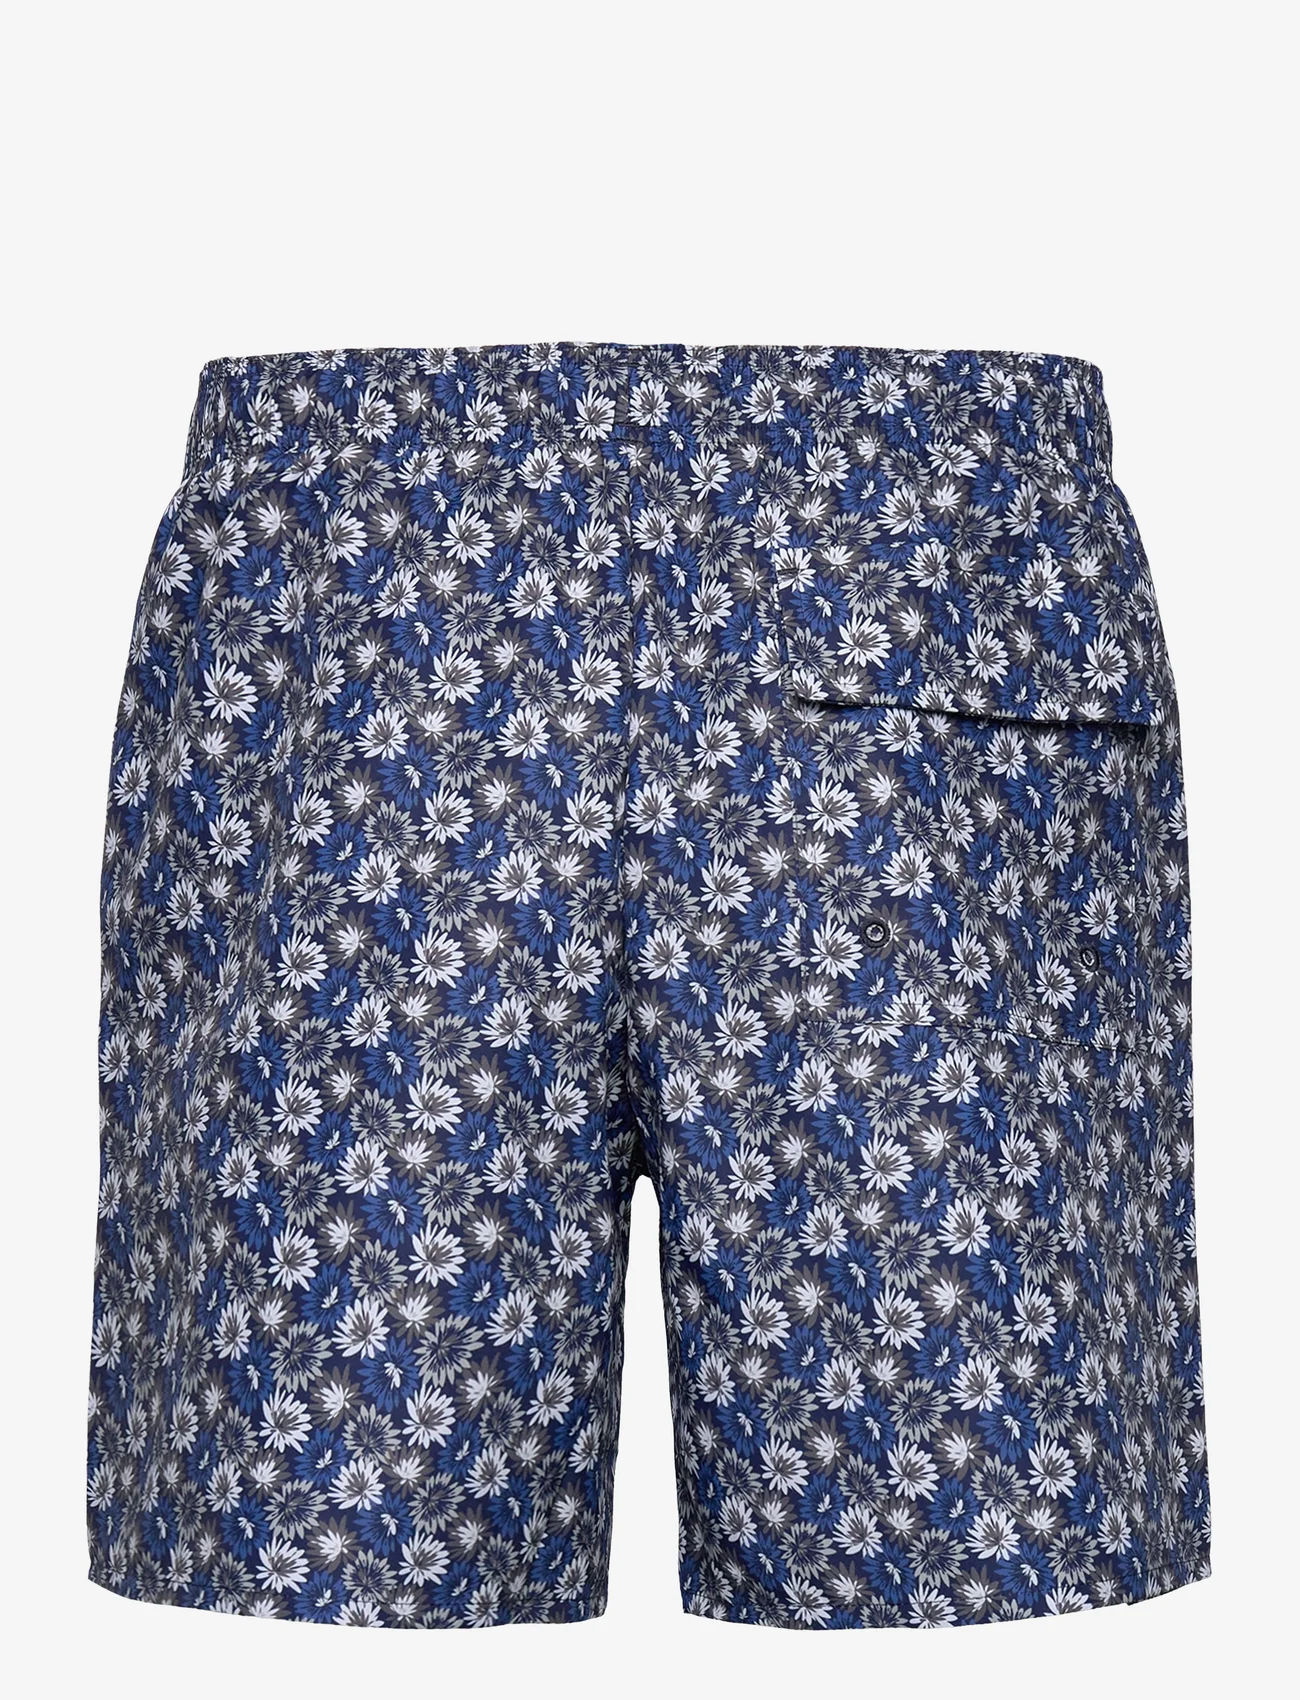 Lyle & Scott - Floral Print Resort Swim Shorts - uimashortsit - z271 dark navy - 1